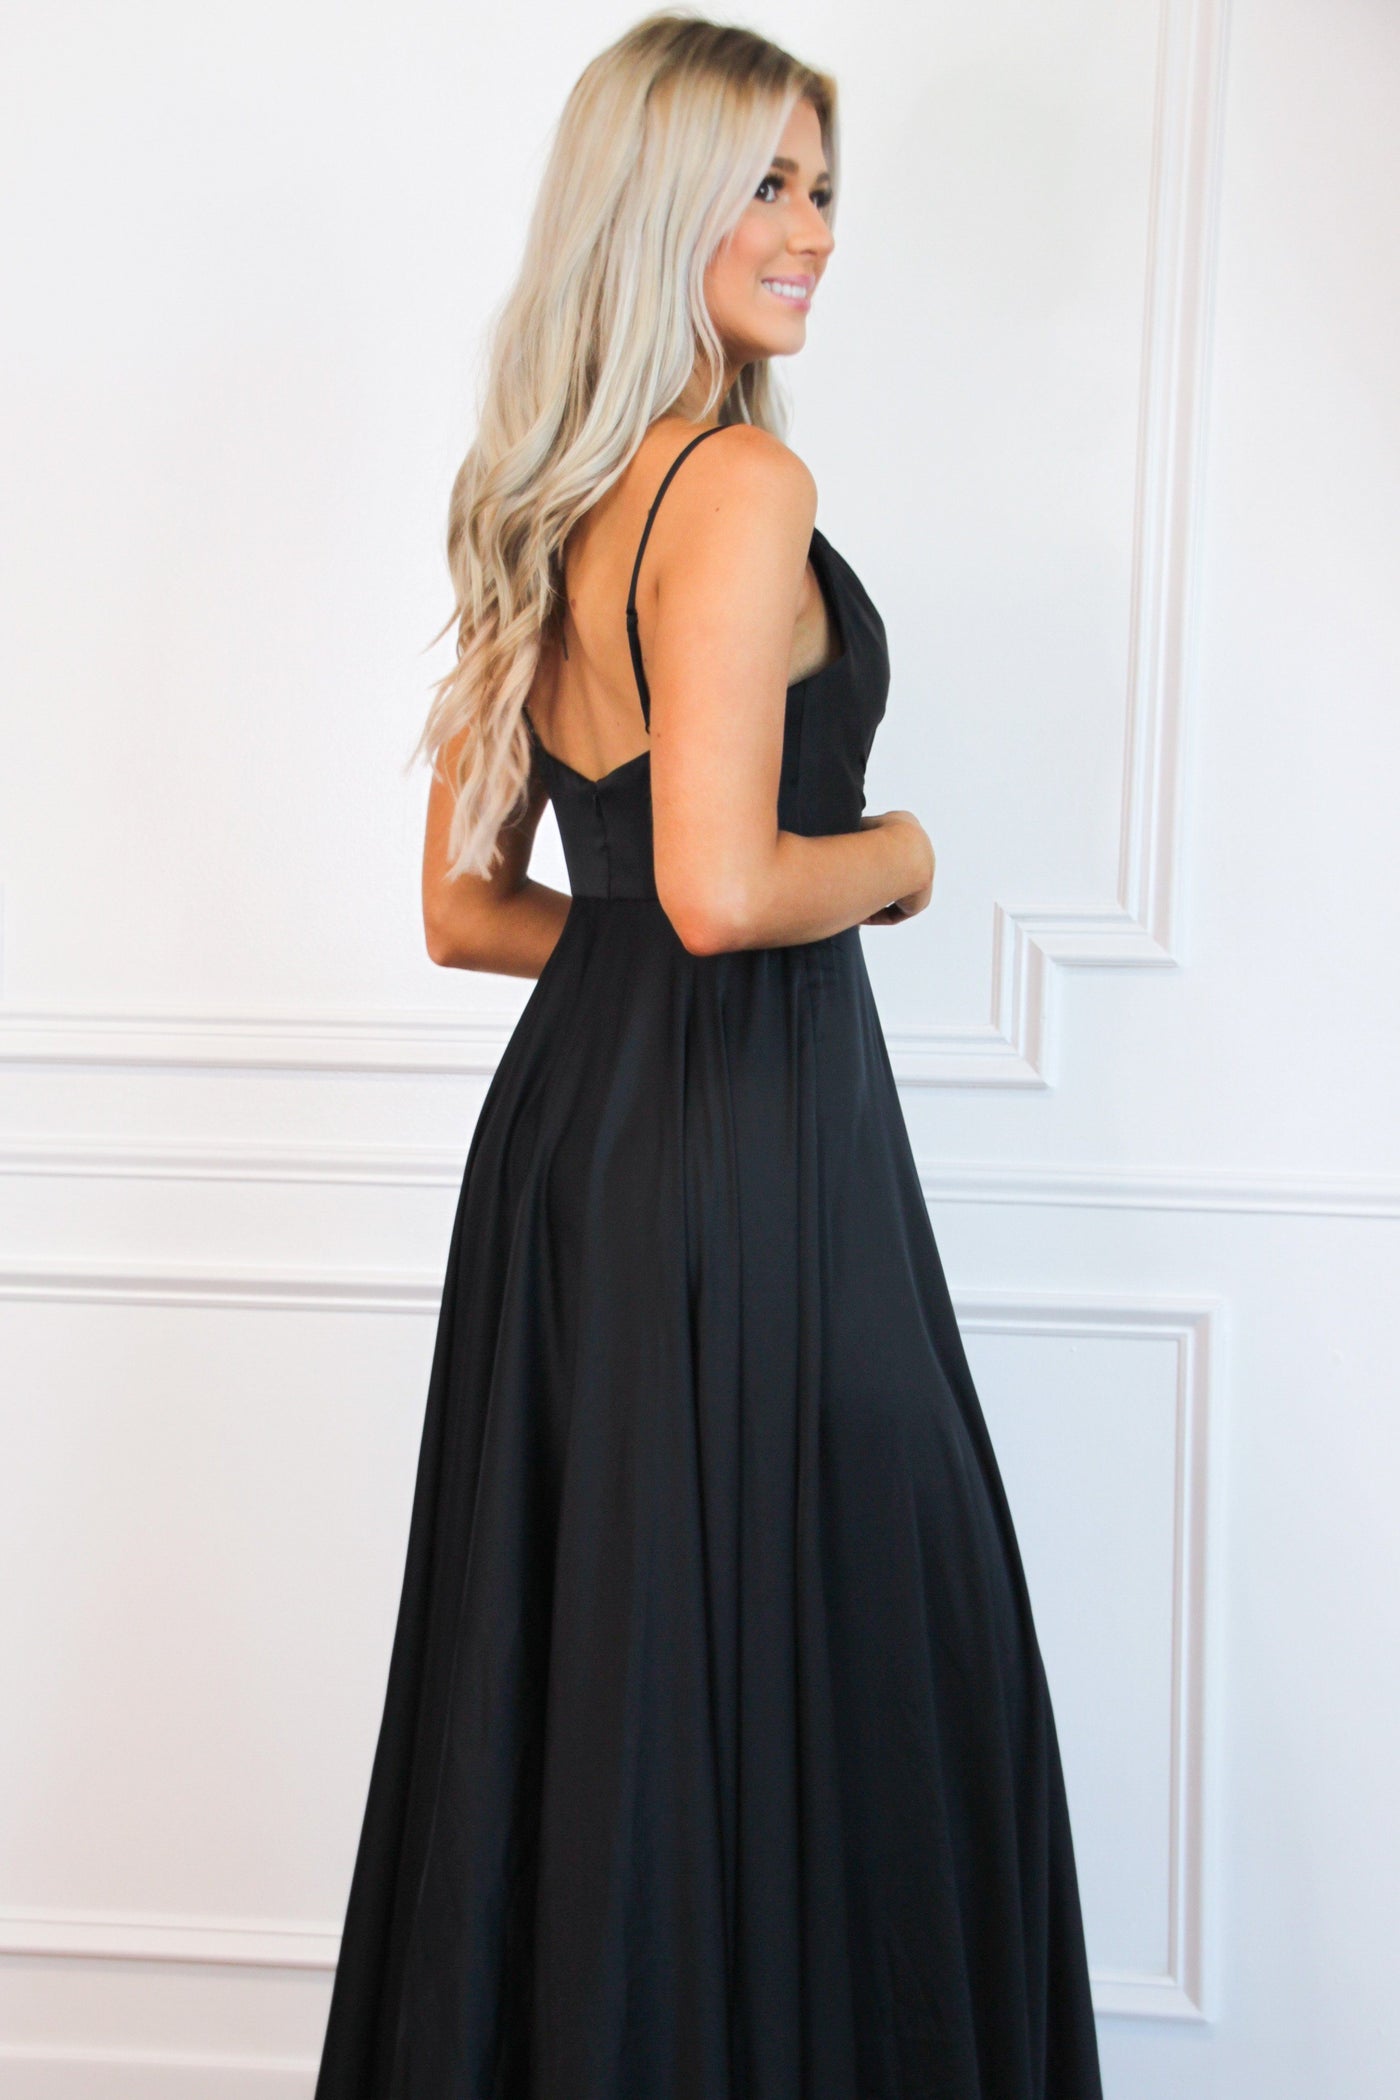 Ella Satin Slit Formal Dress: Black - Bella and Bloom Boutique